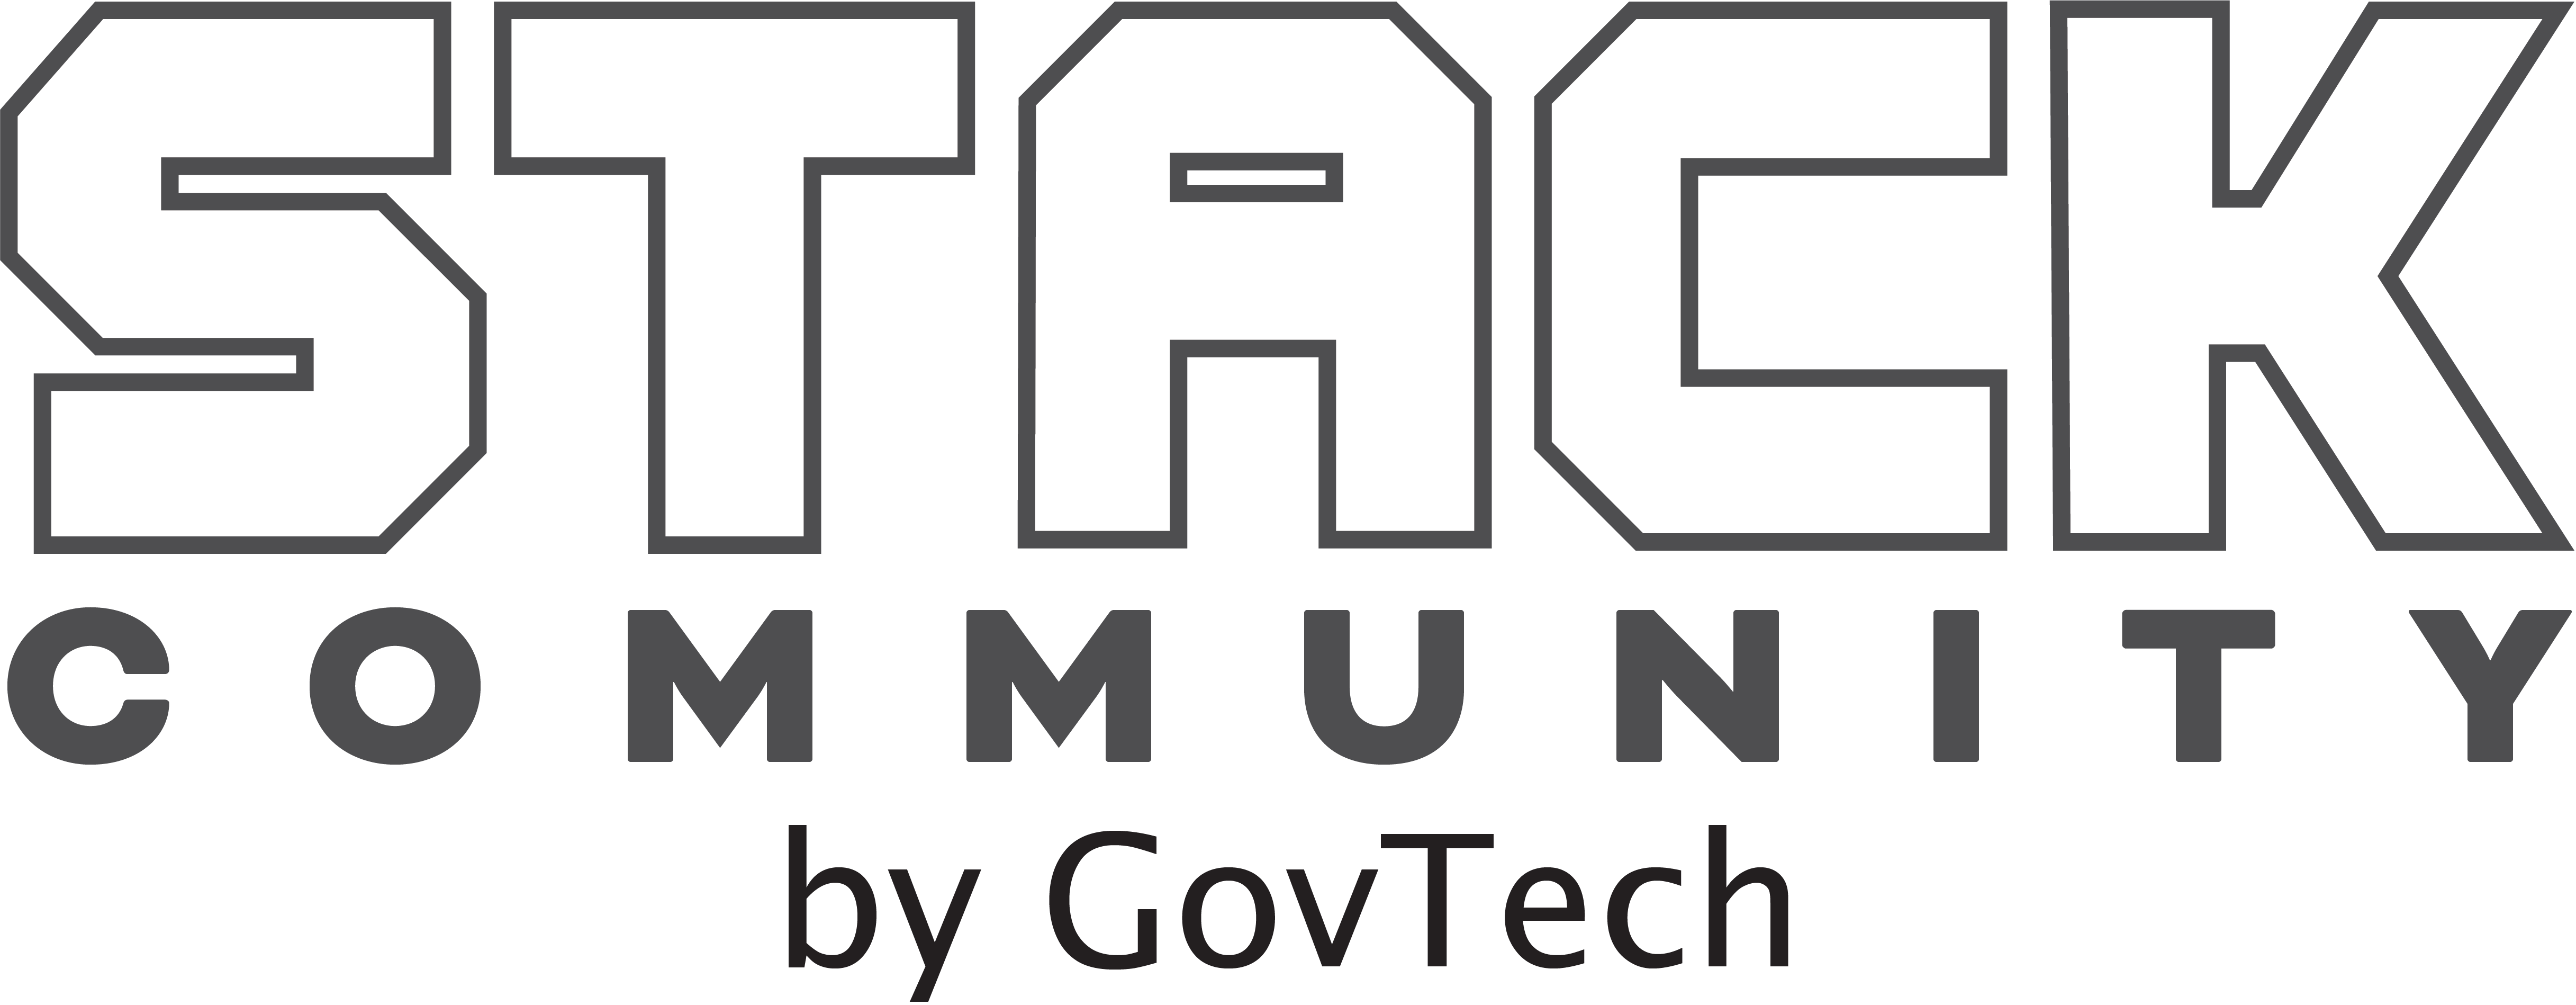 STACK Community logo